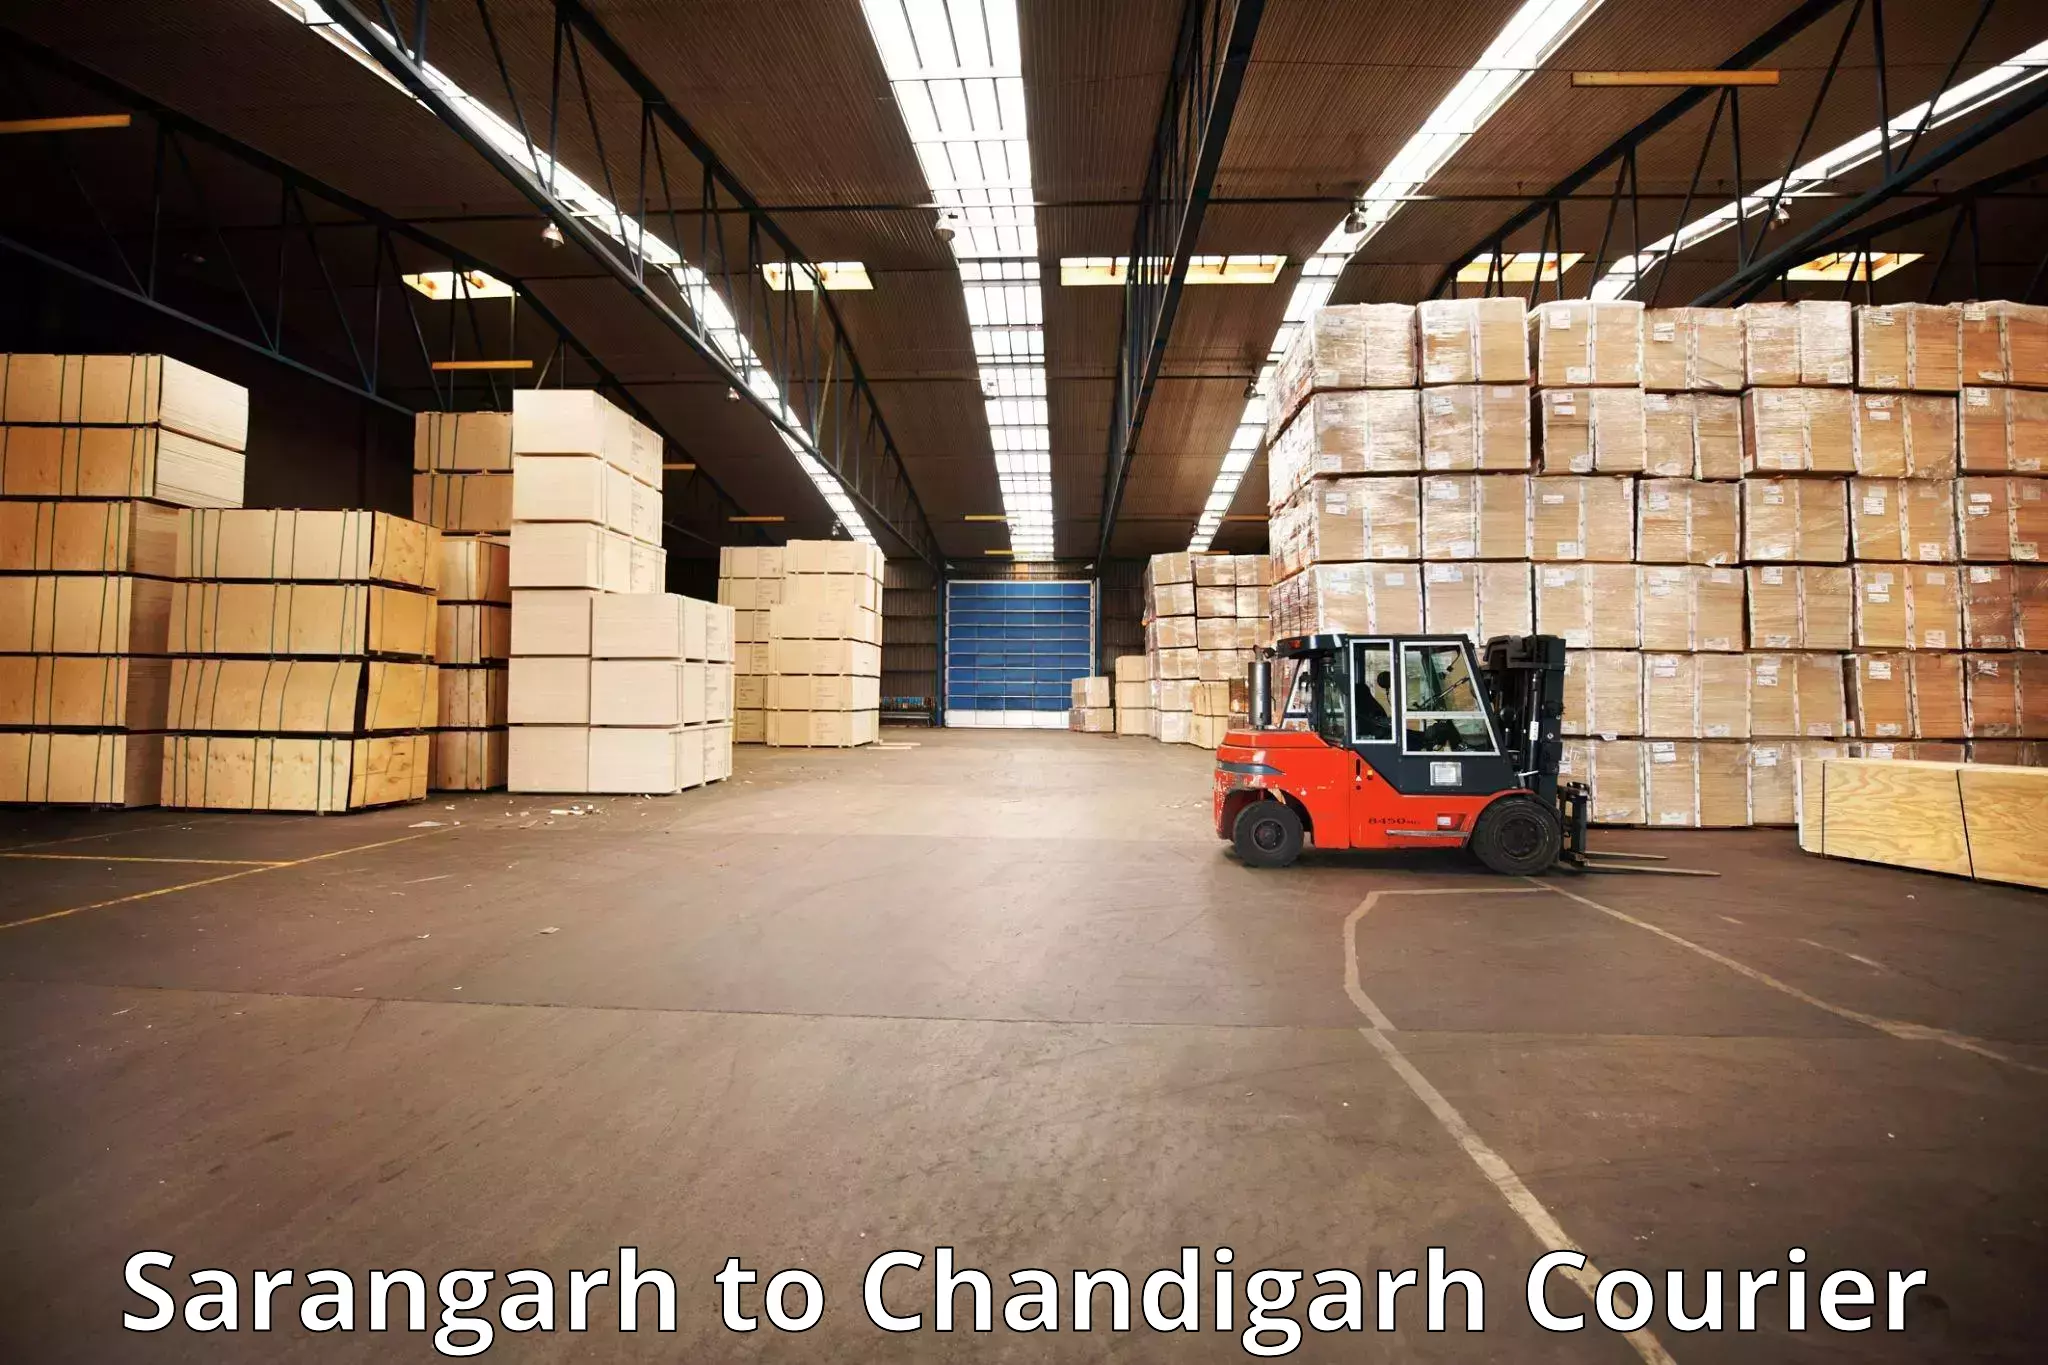 Luggage shipment tracking in Sarangarh to Chandigarh